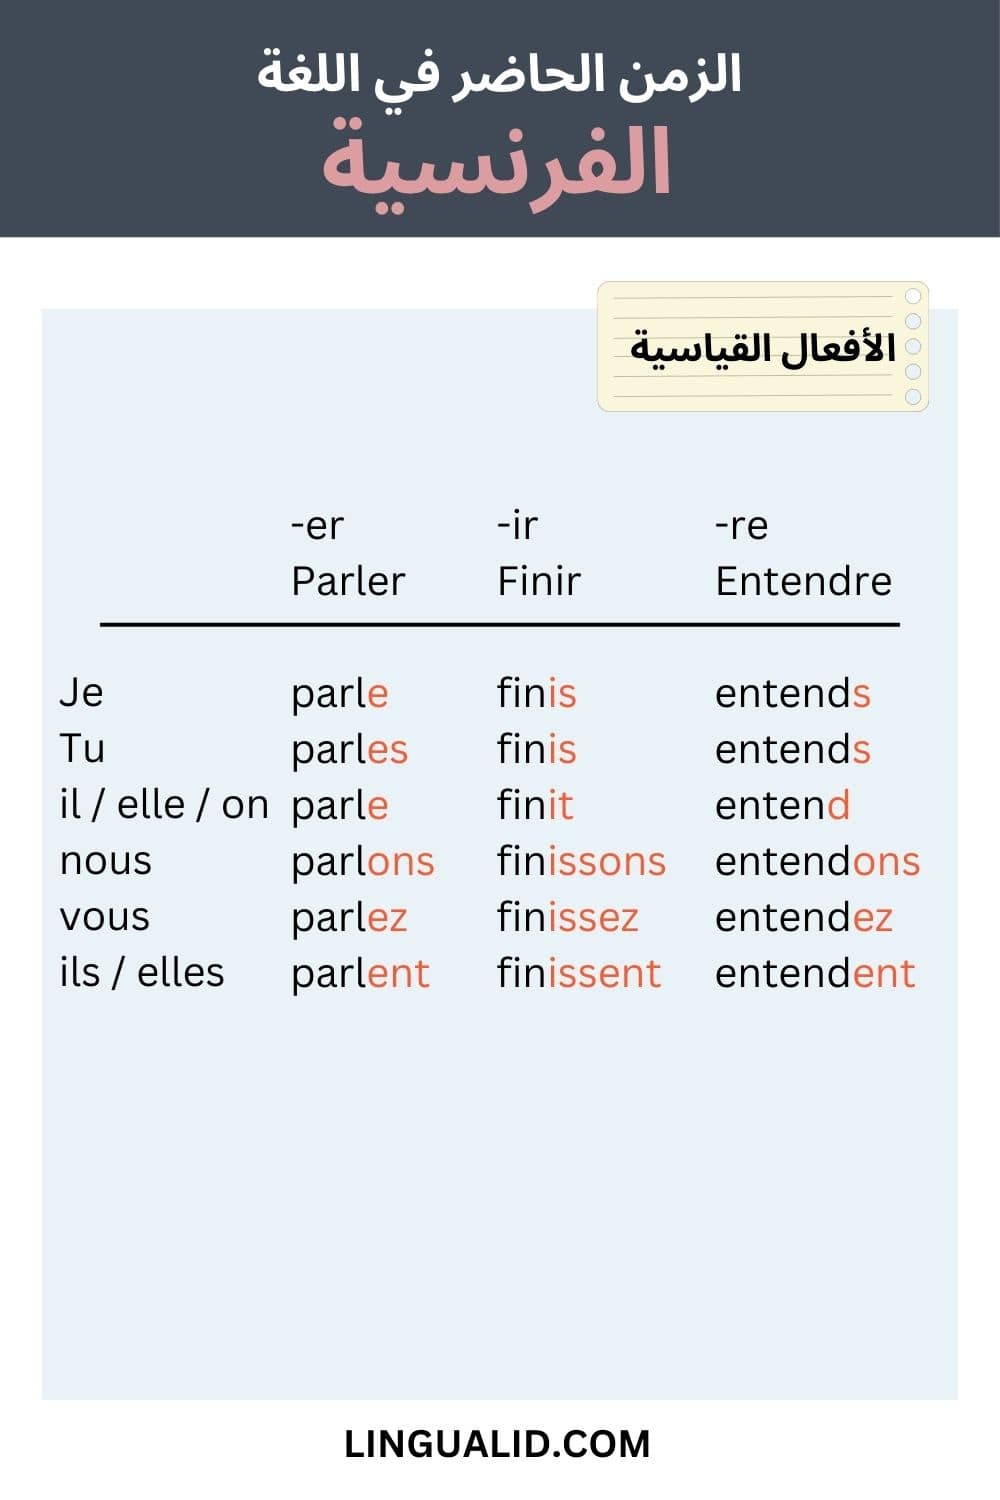 الزمن الحاضر في اللغة الفرنسية